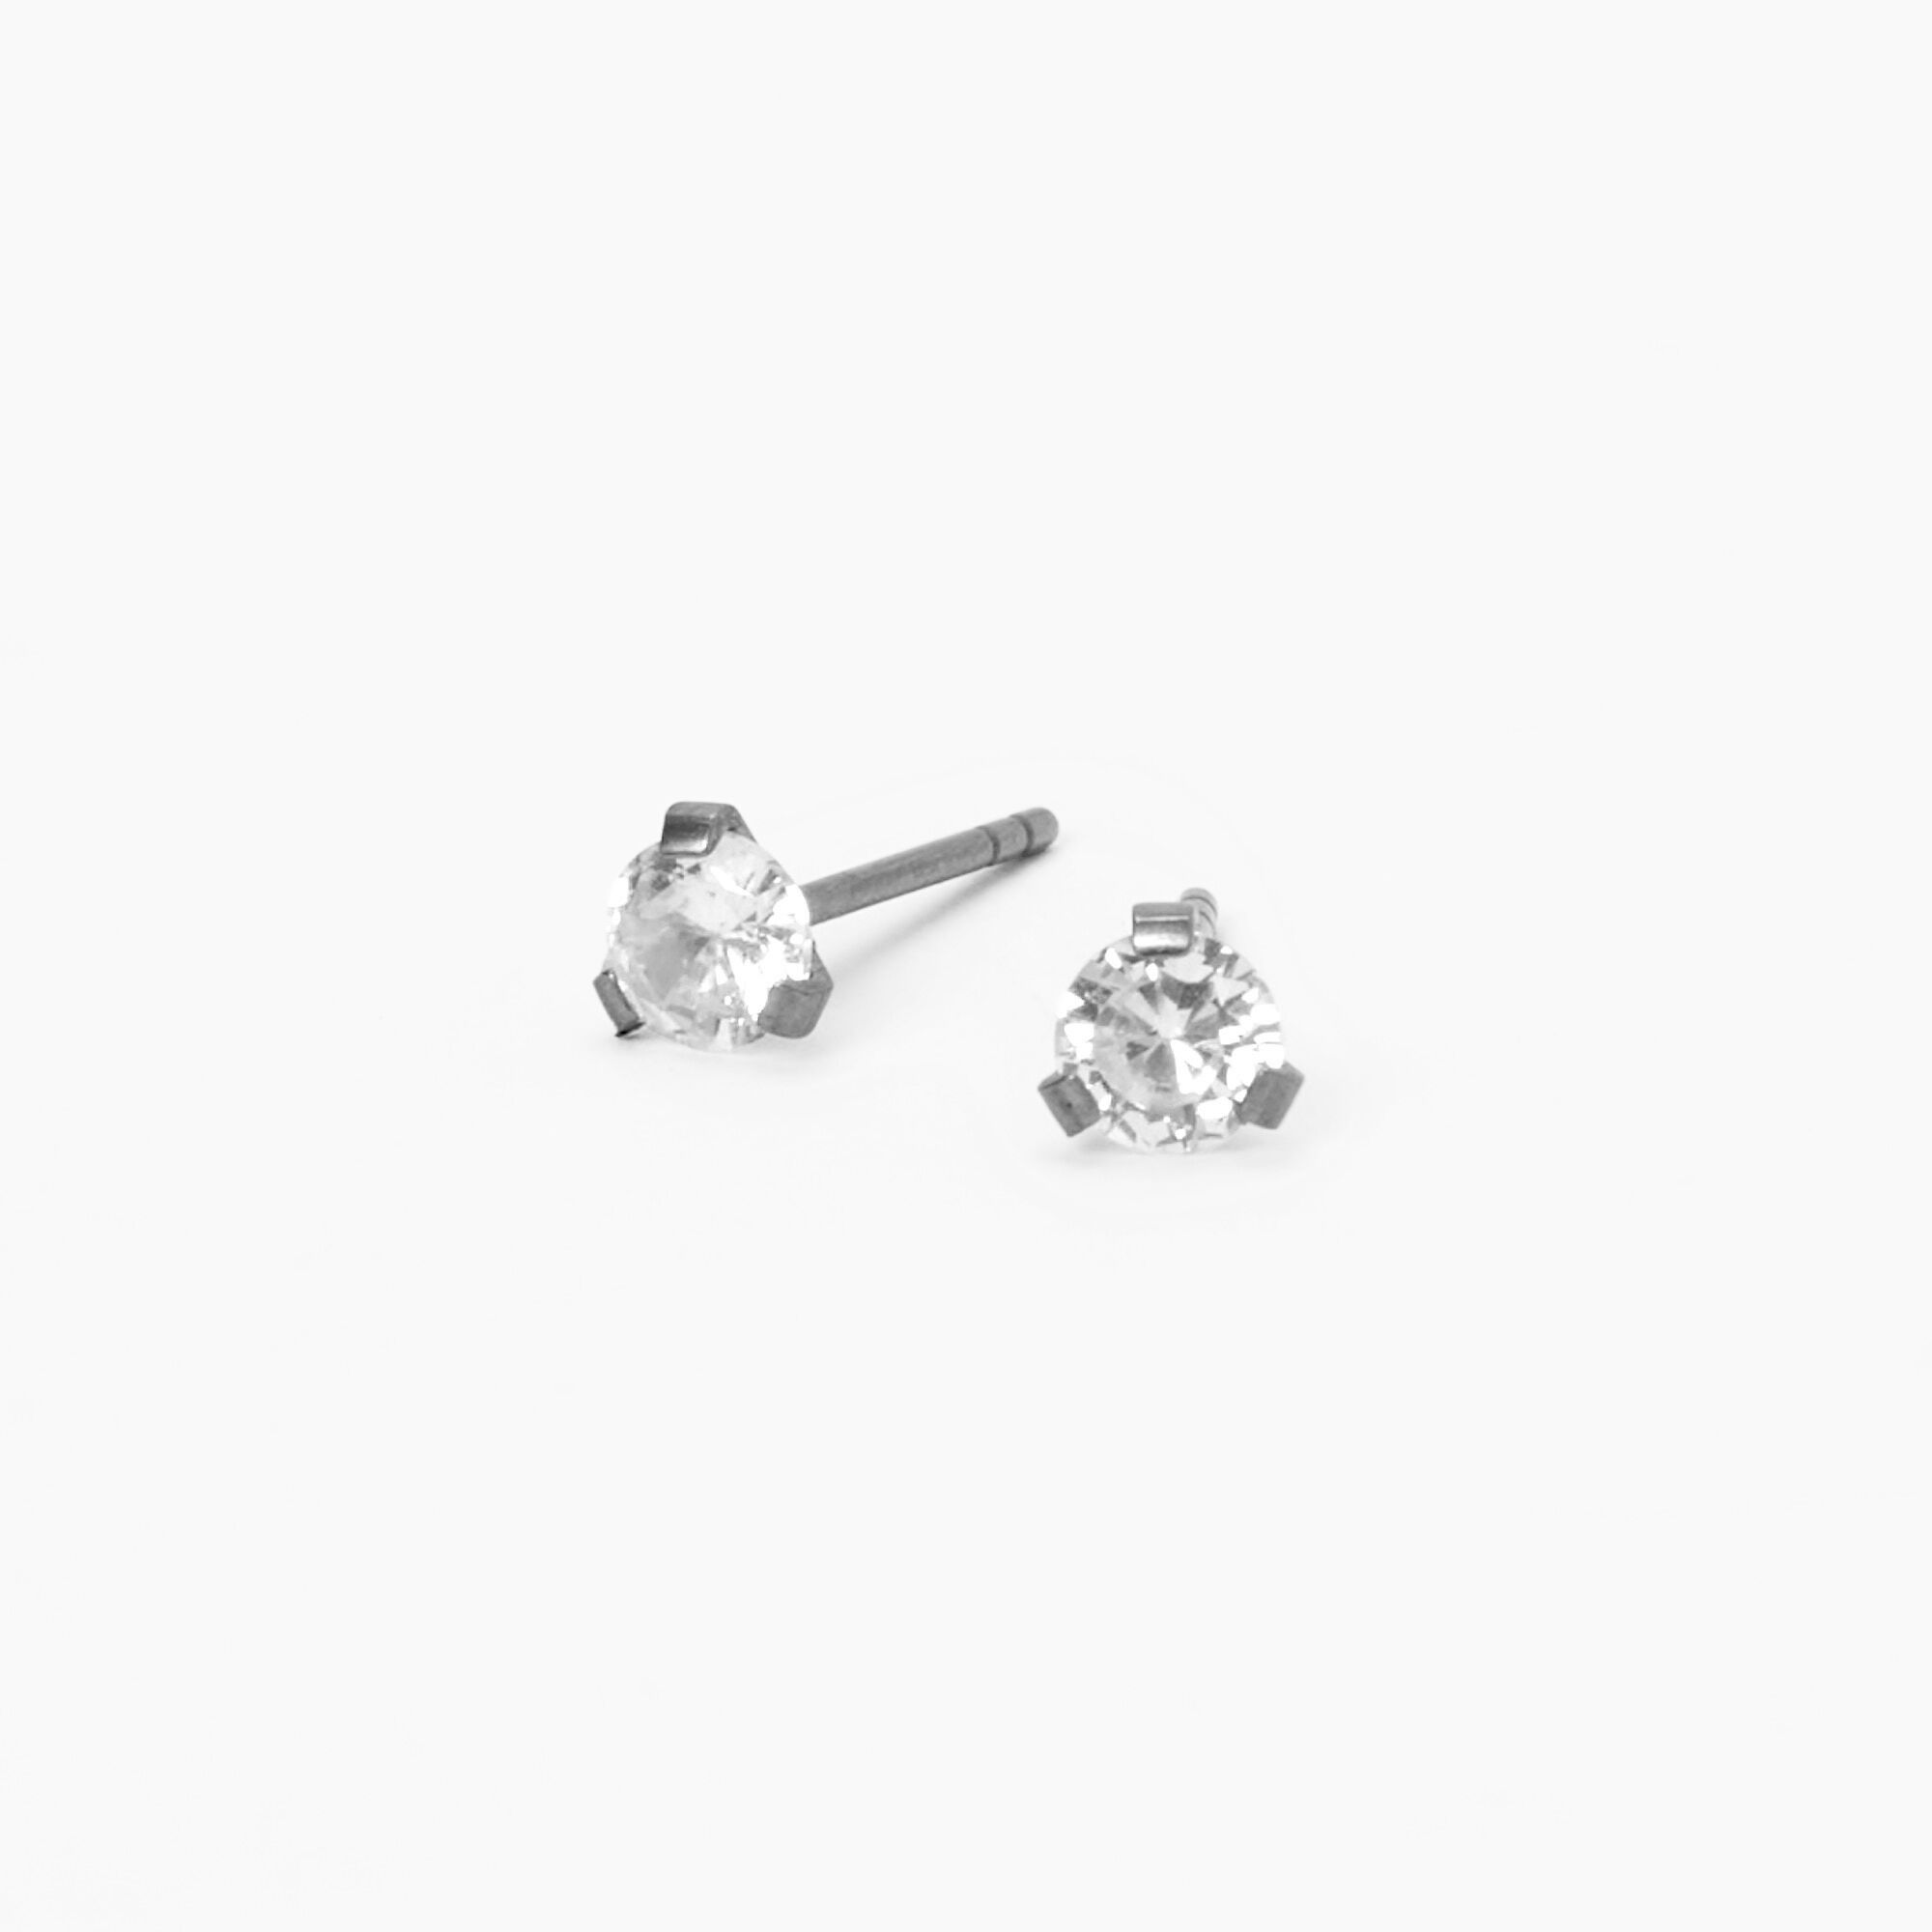 4mm Single Stud Earring Hypoallergenic – Little Gems Jewels